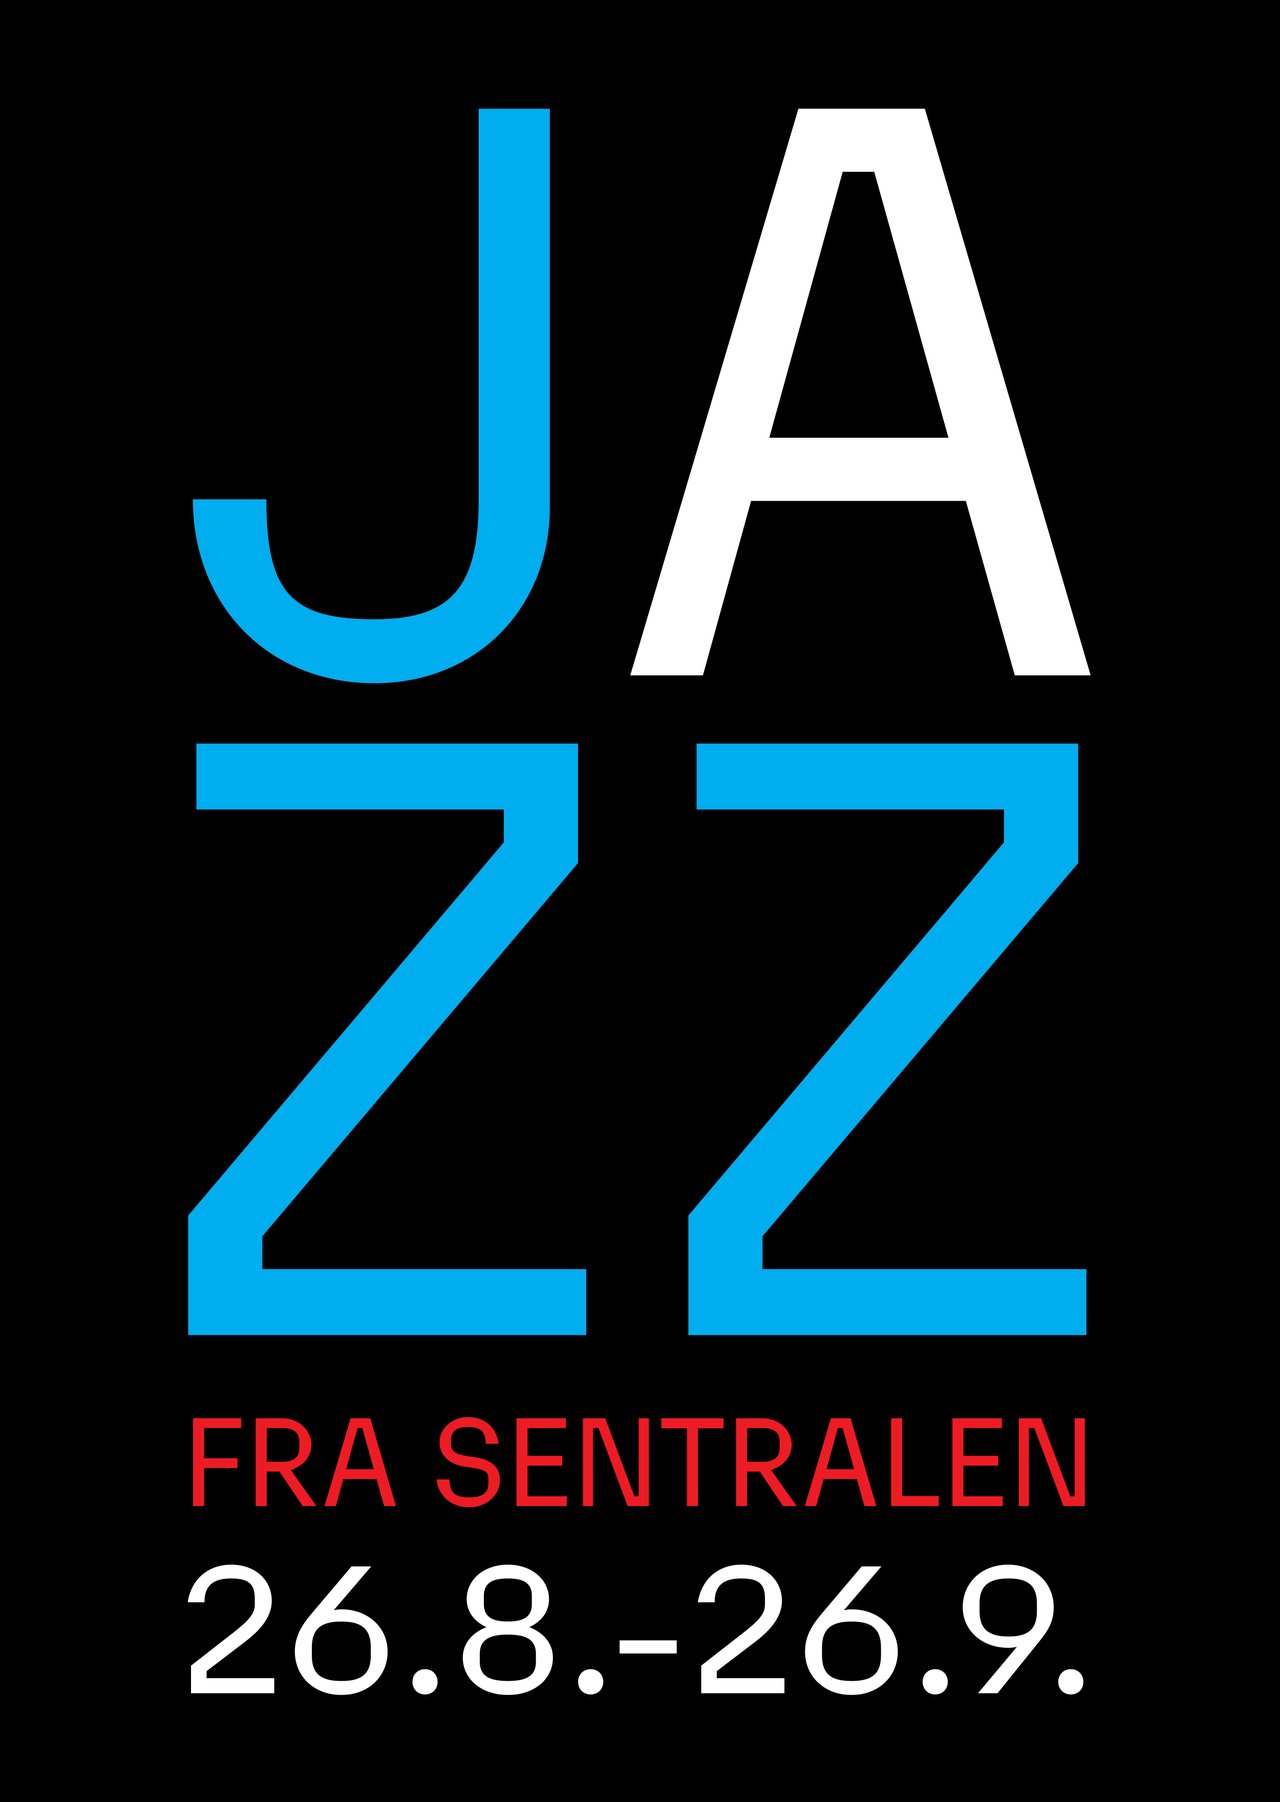 Profile case jazz 06